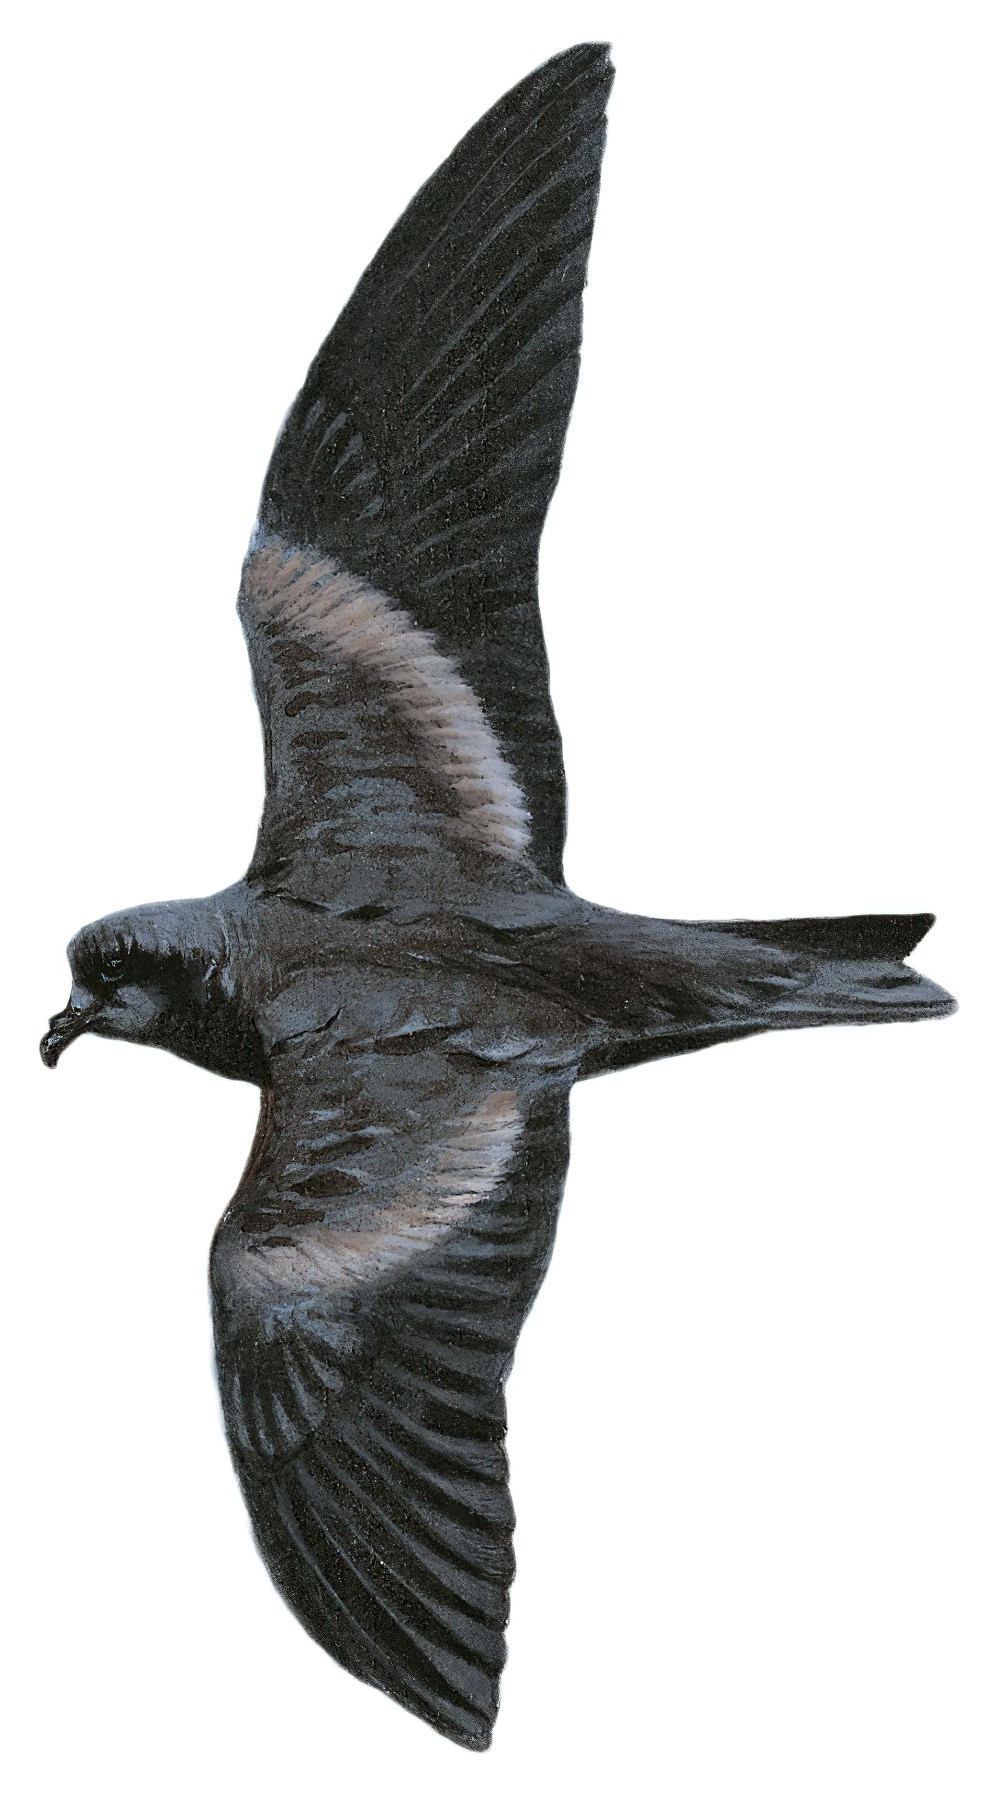 褐翅叉尾海燕 / Tristram's Storm Petrel / Oceanodroma tristrami